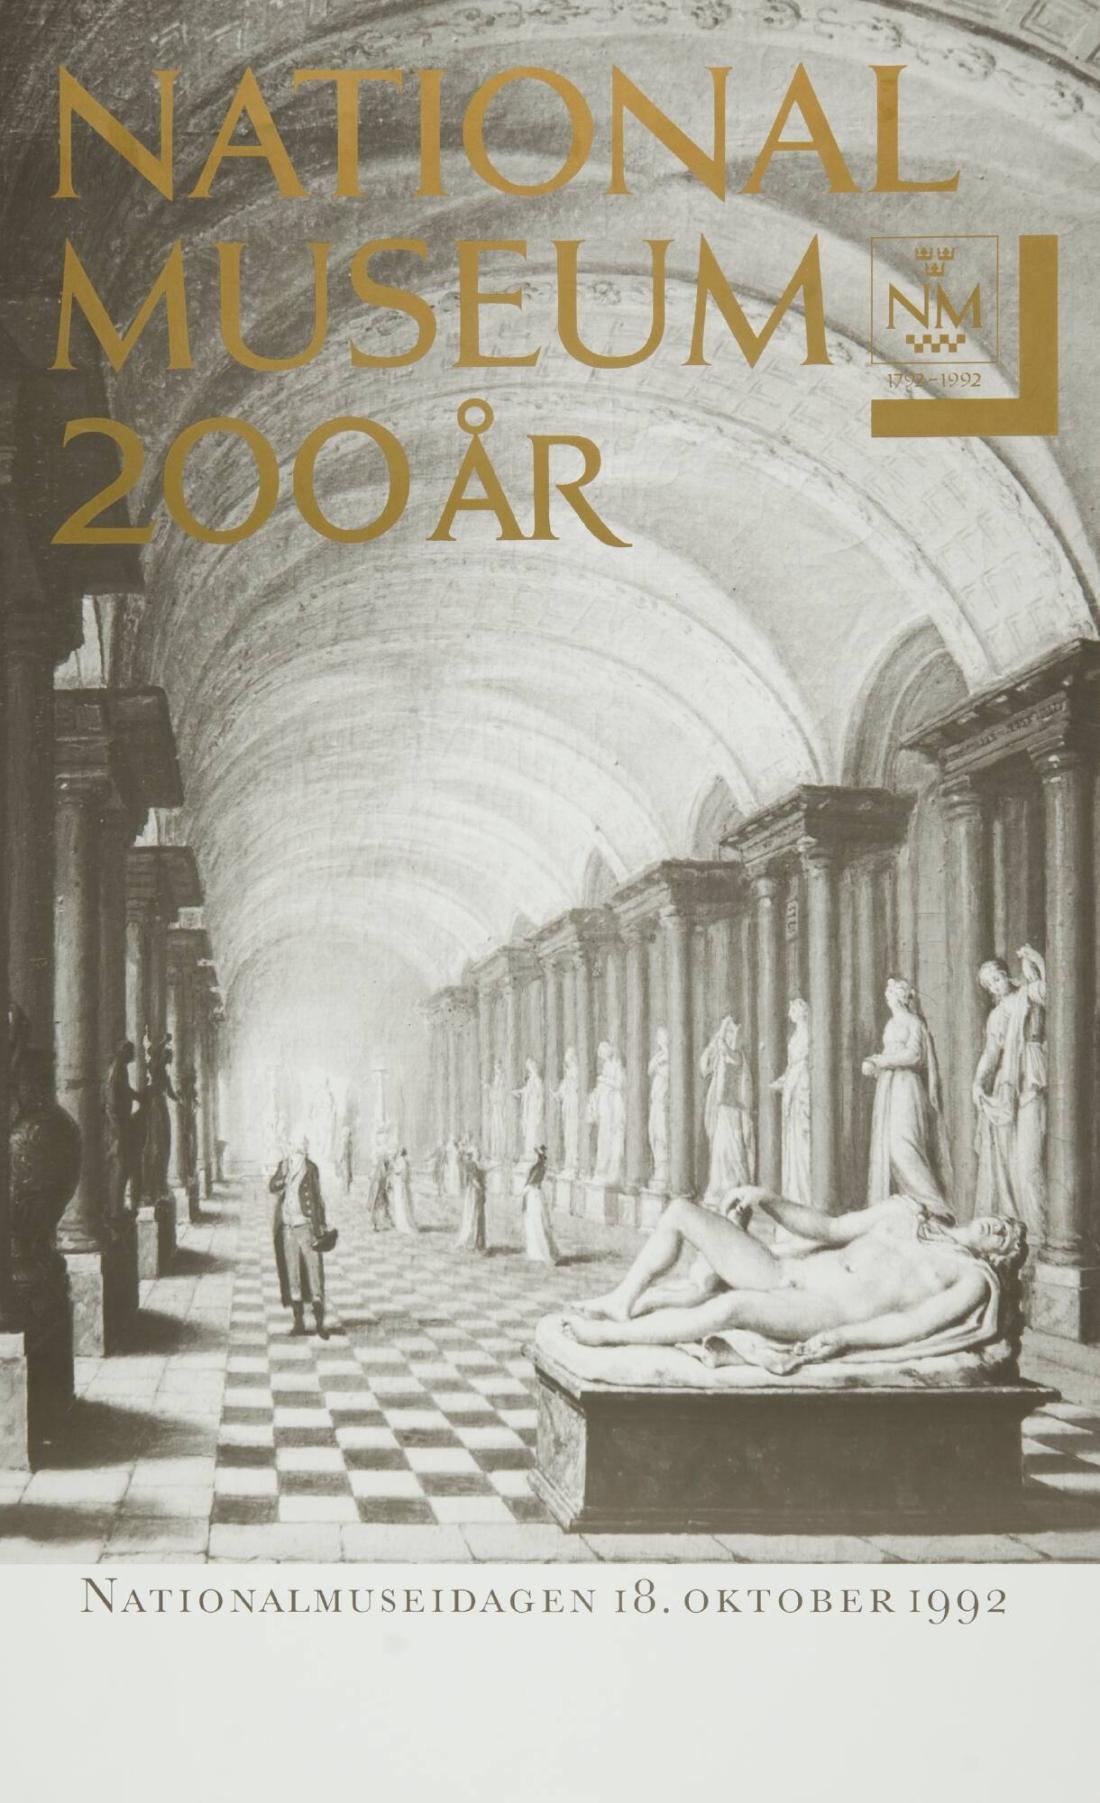 Nationalmuseum 200 år. Nationalmuseidagen 18 oktober 1992